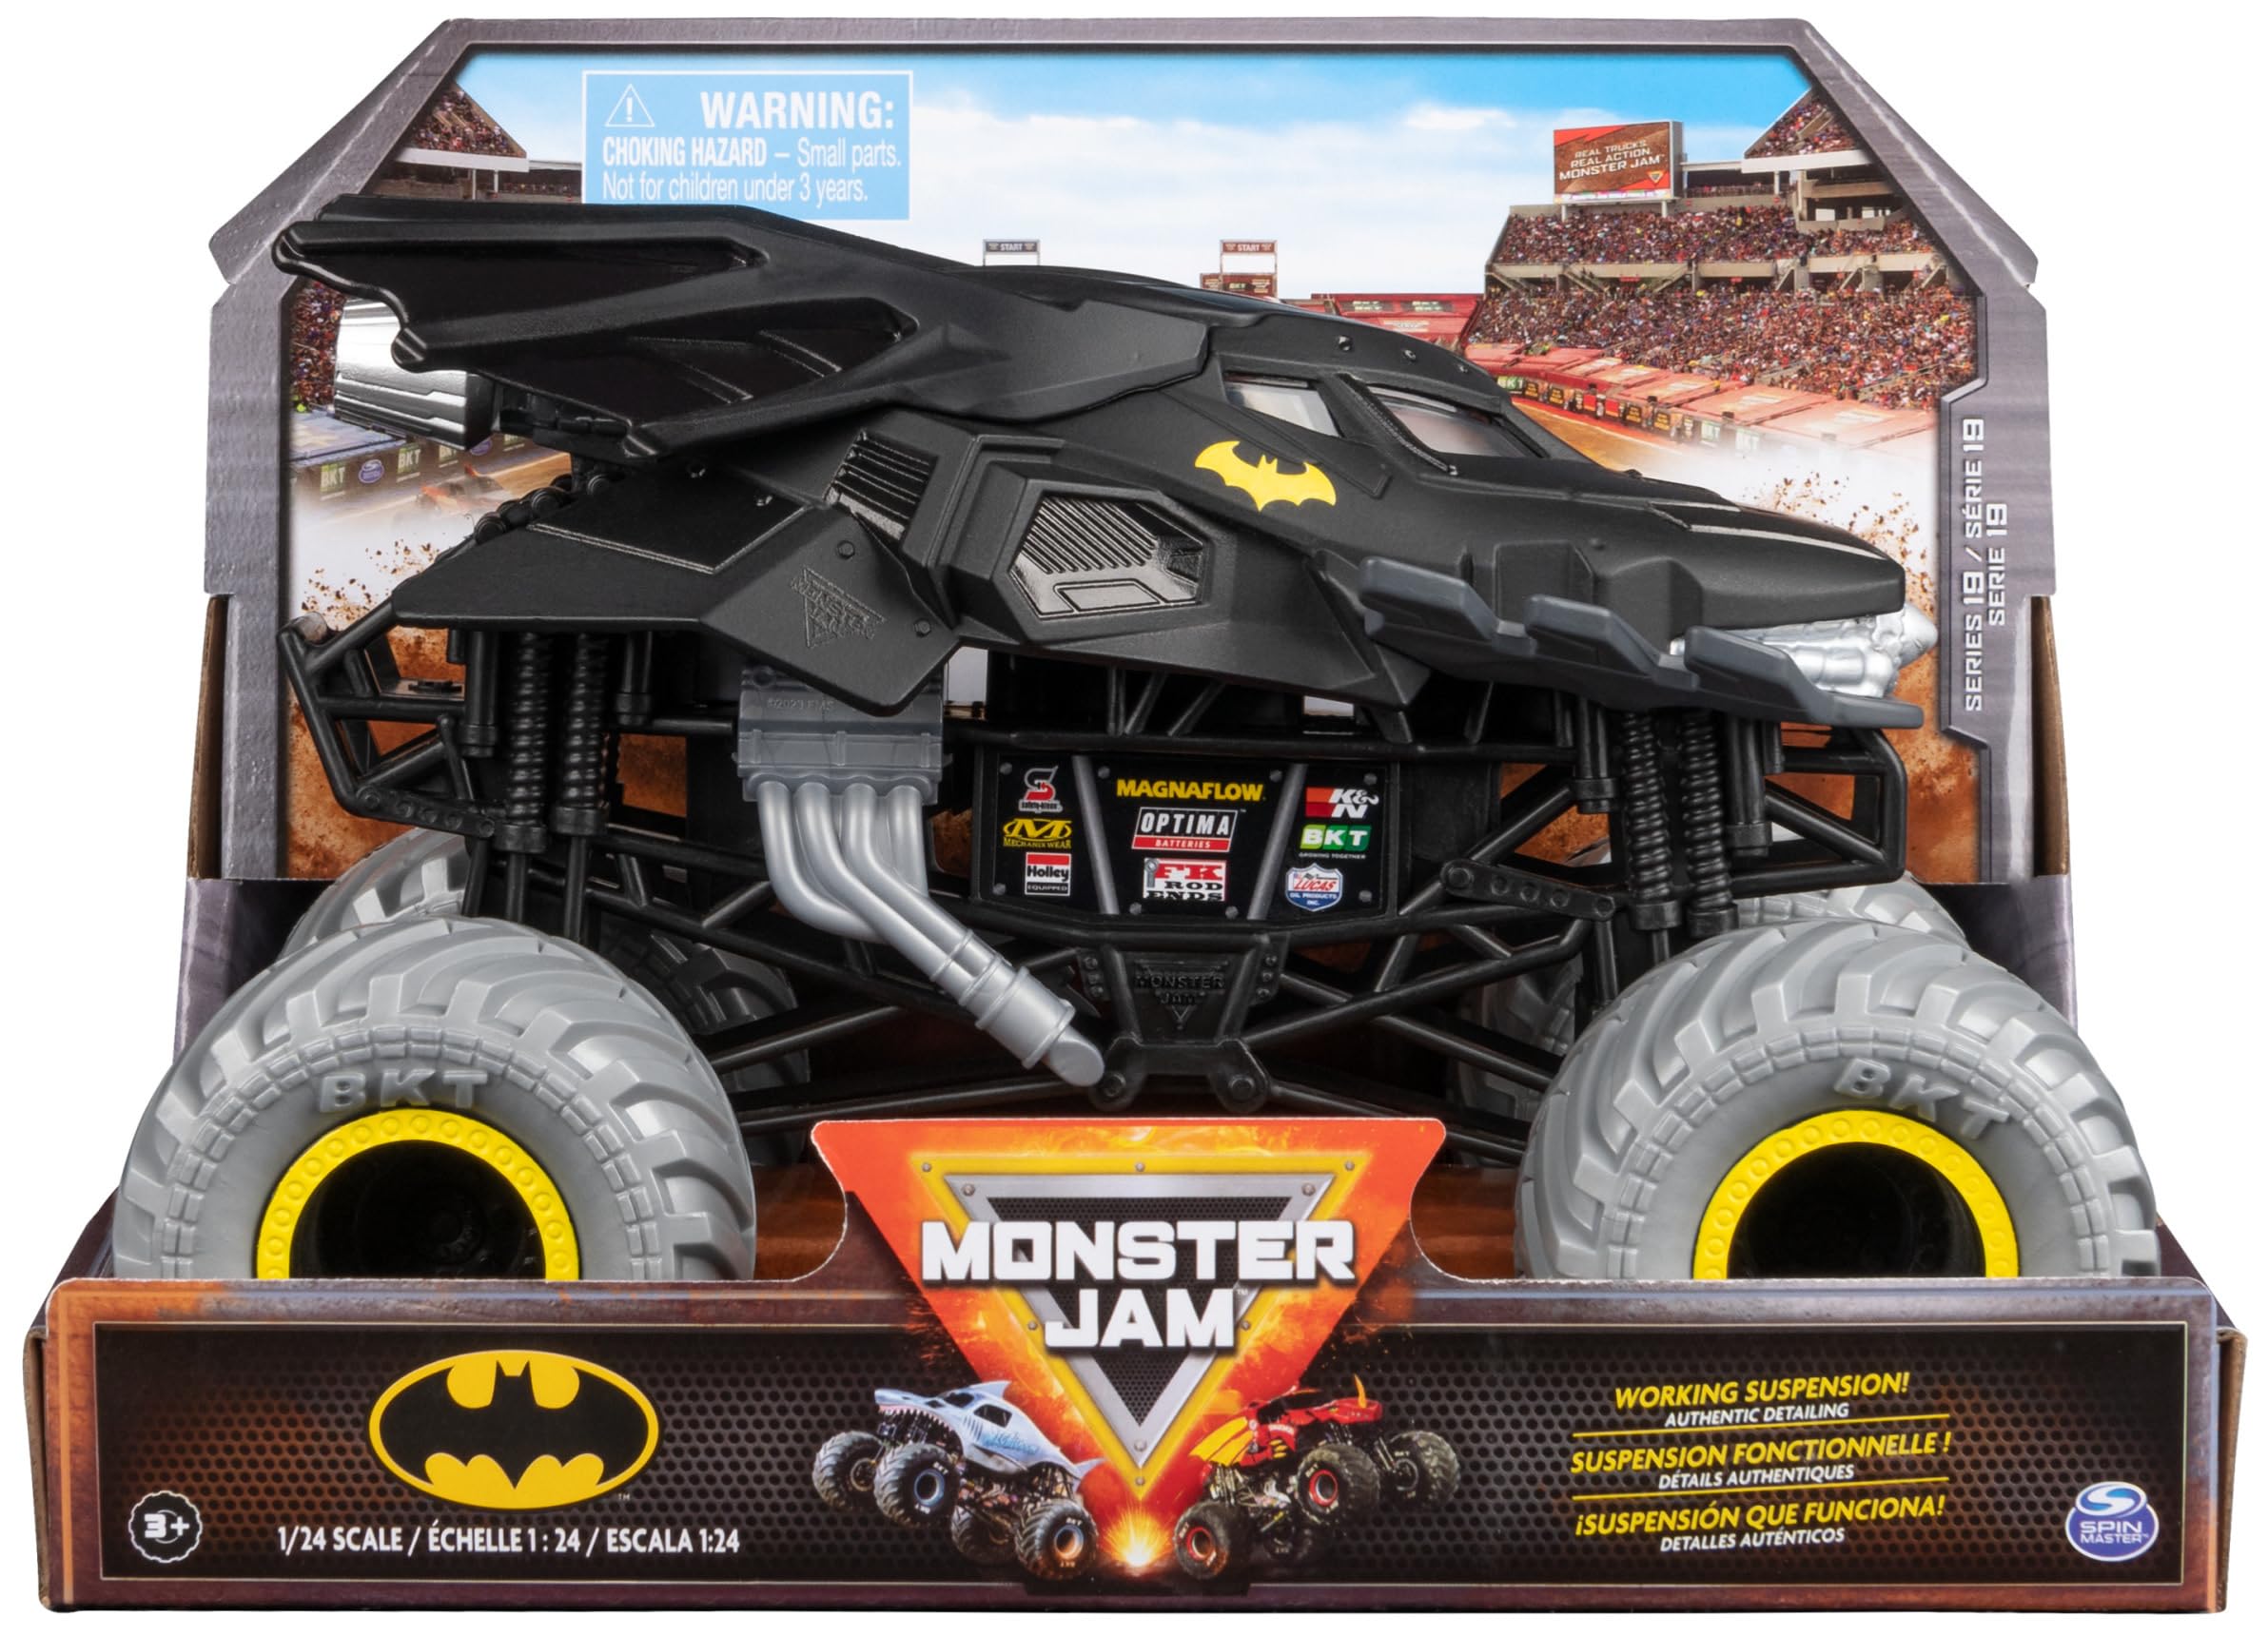 Monster Jam, Offizieller Batman Monster Truck, Sammler-Druckguss-Fahrzeug, Maßstab 1:24, Kinderspielzeug für Jungen ab 3 Jahren